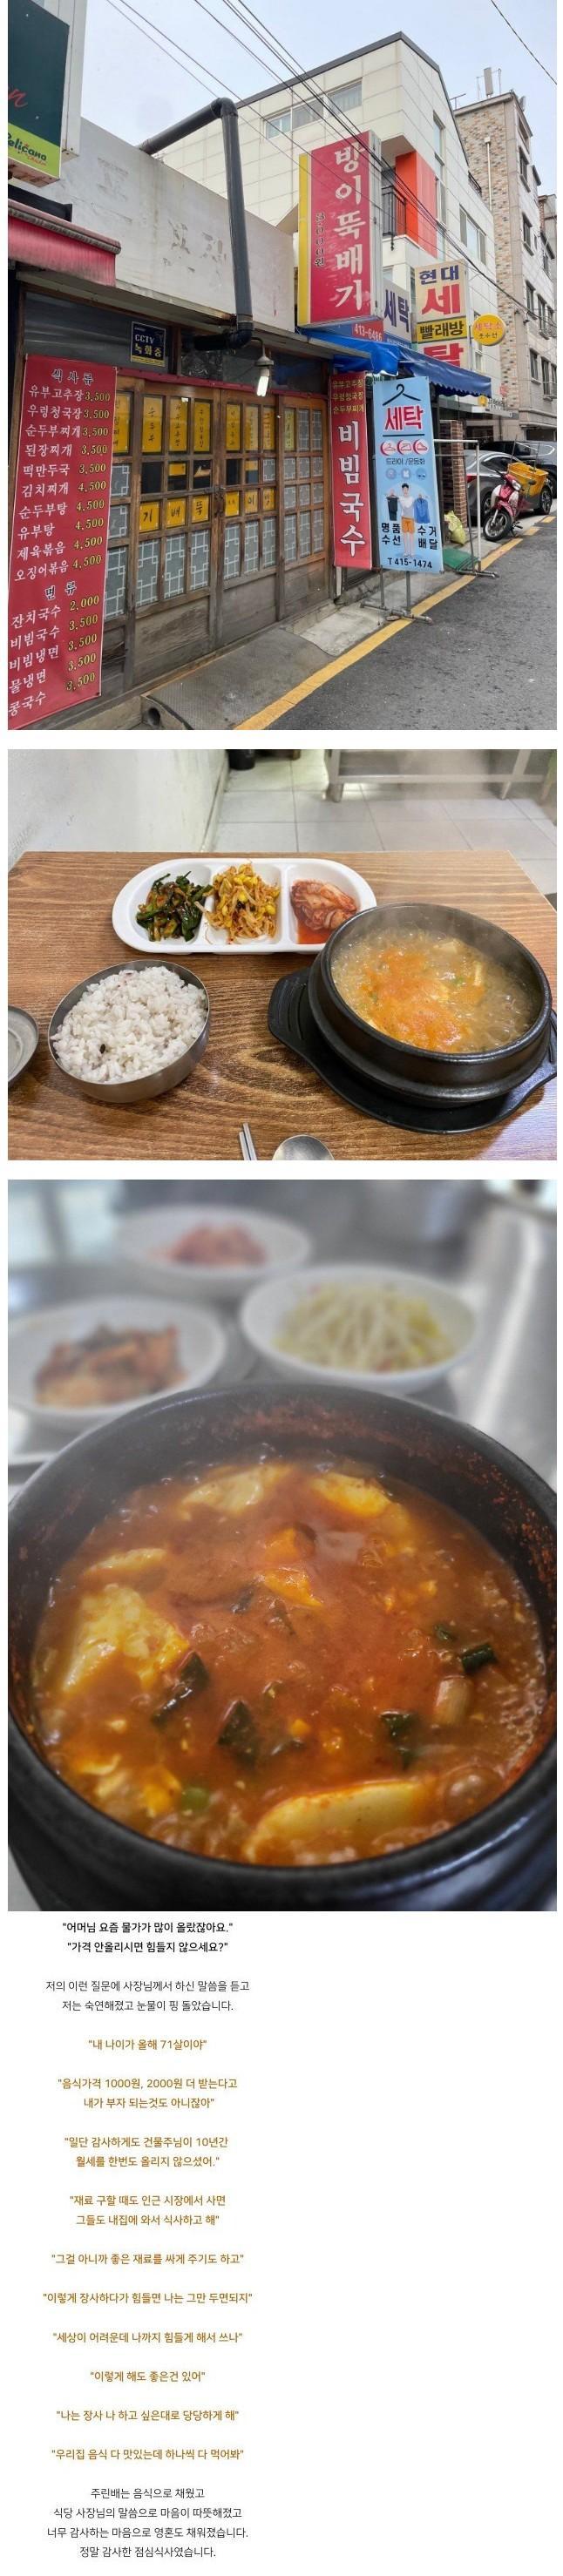 방이동 3500원 찌개 식당.jpg